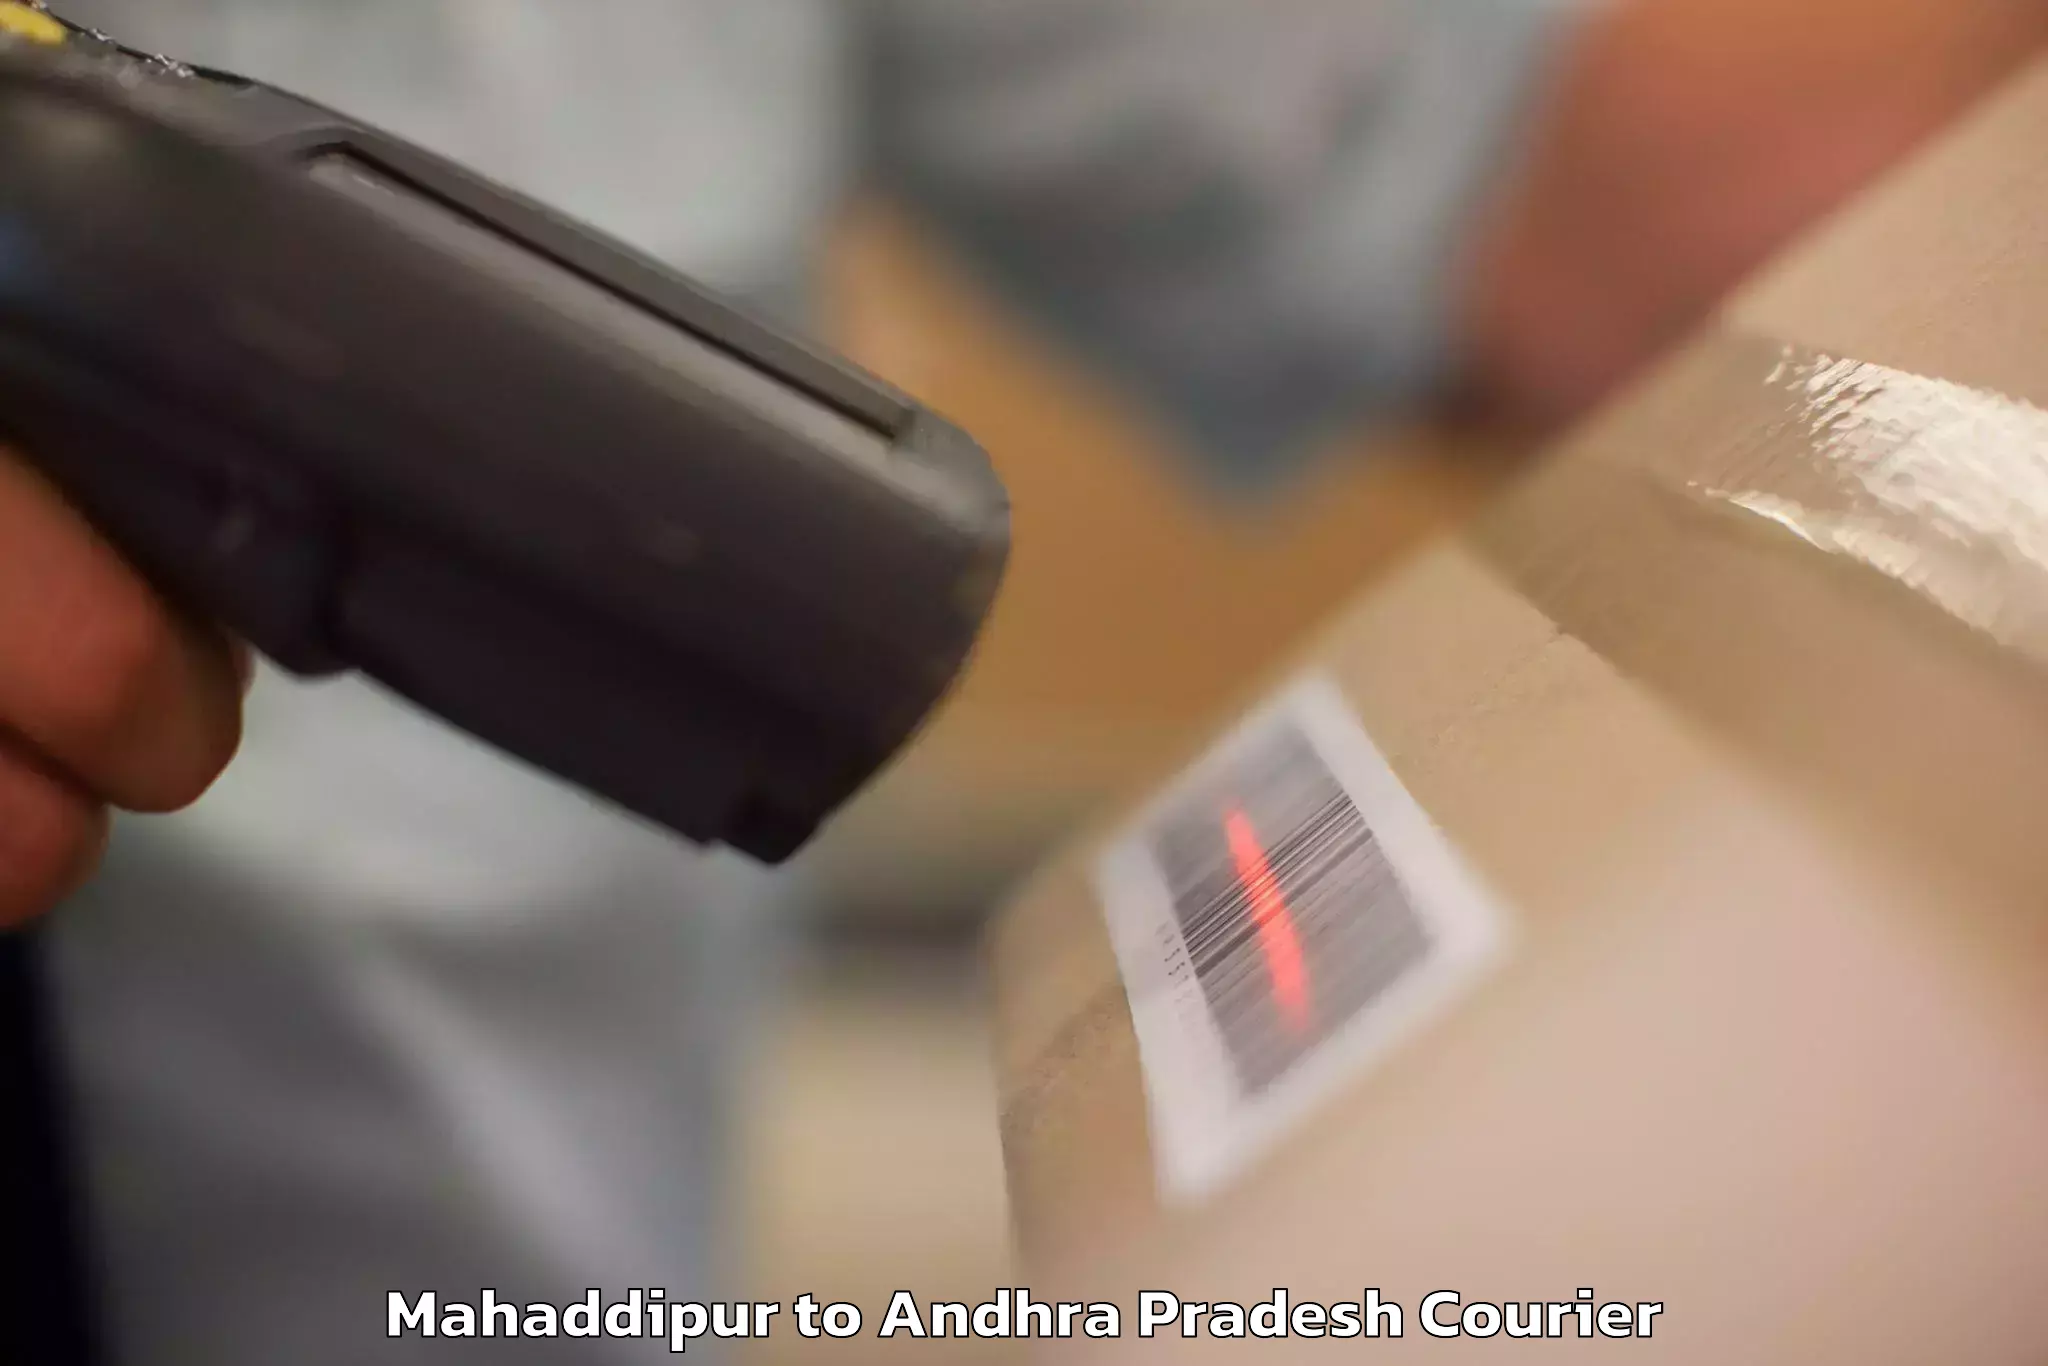 Baggage shipping experts Mahaddipur to Pakala